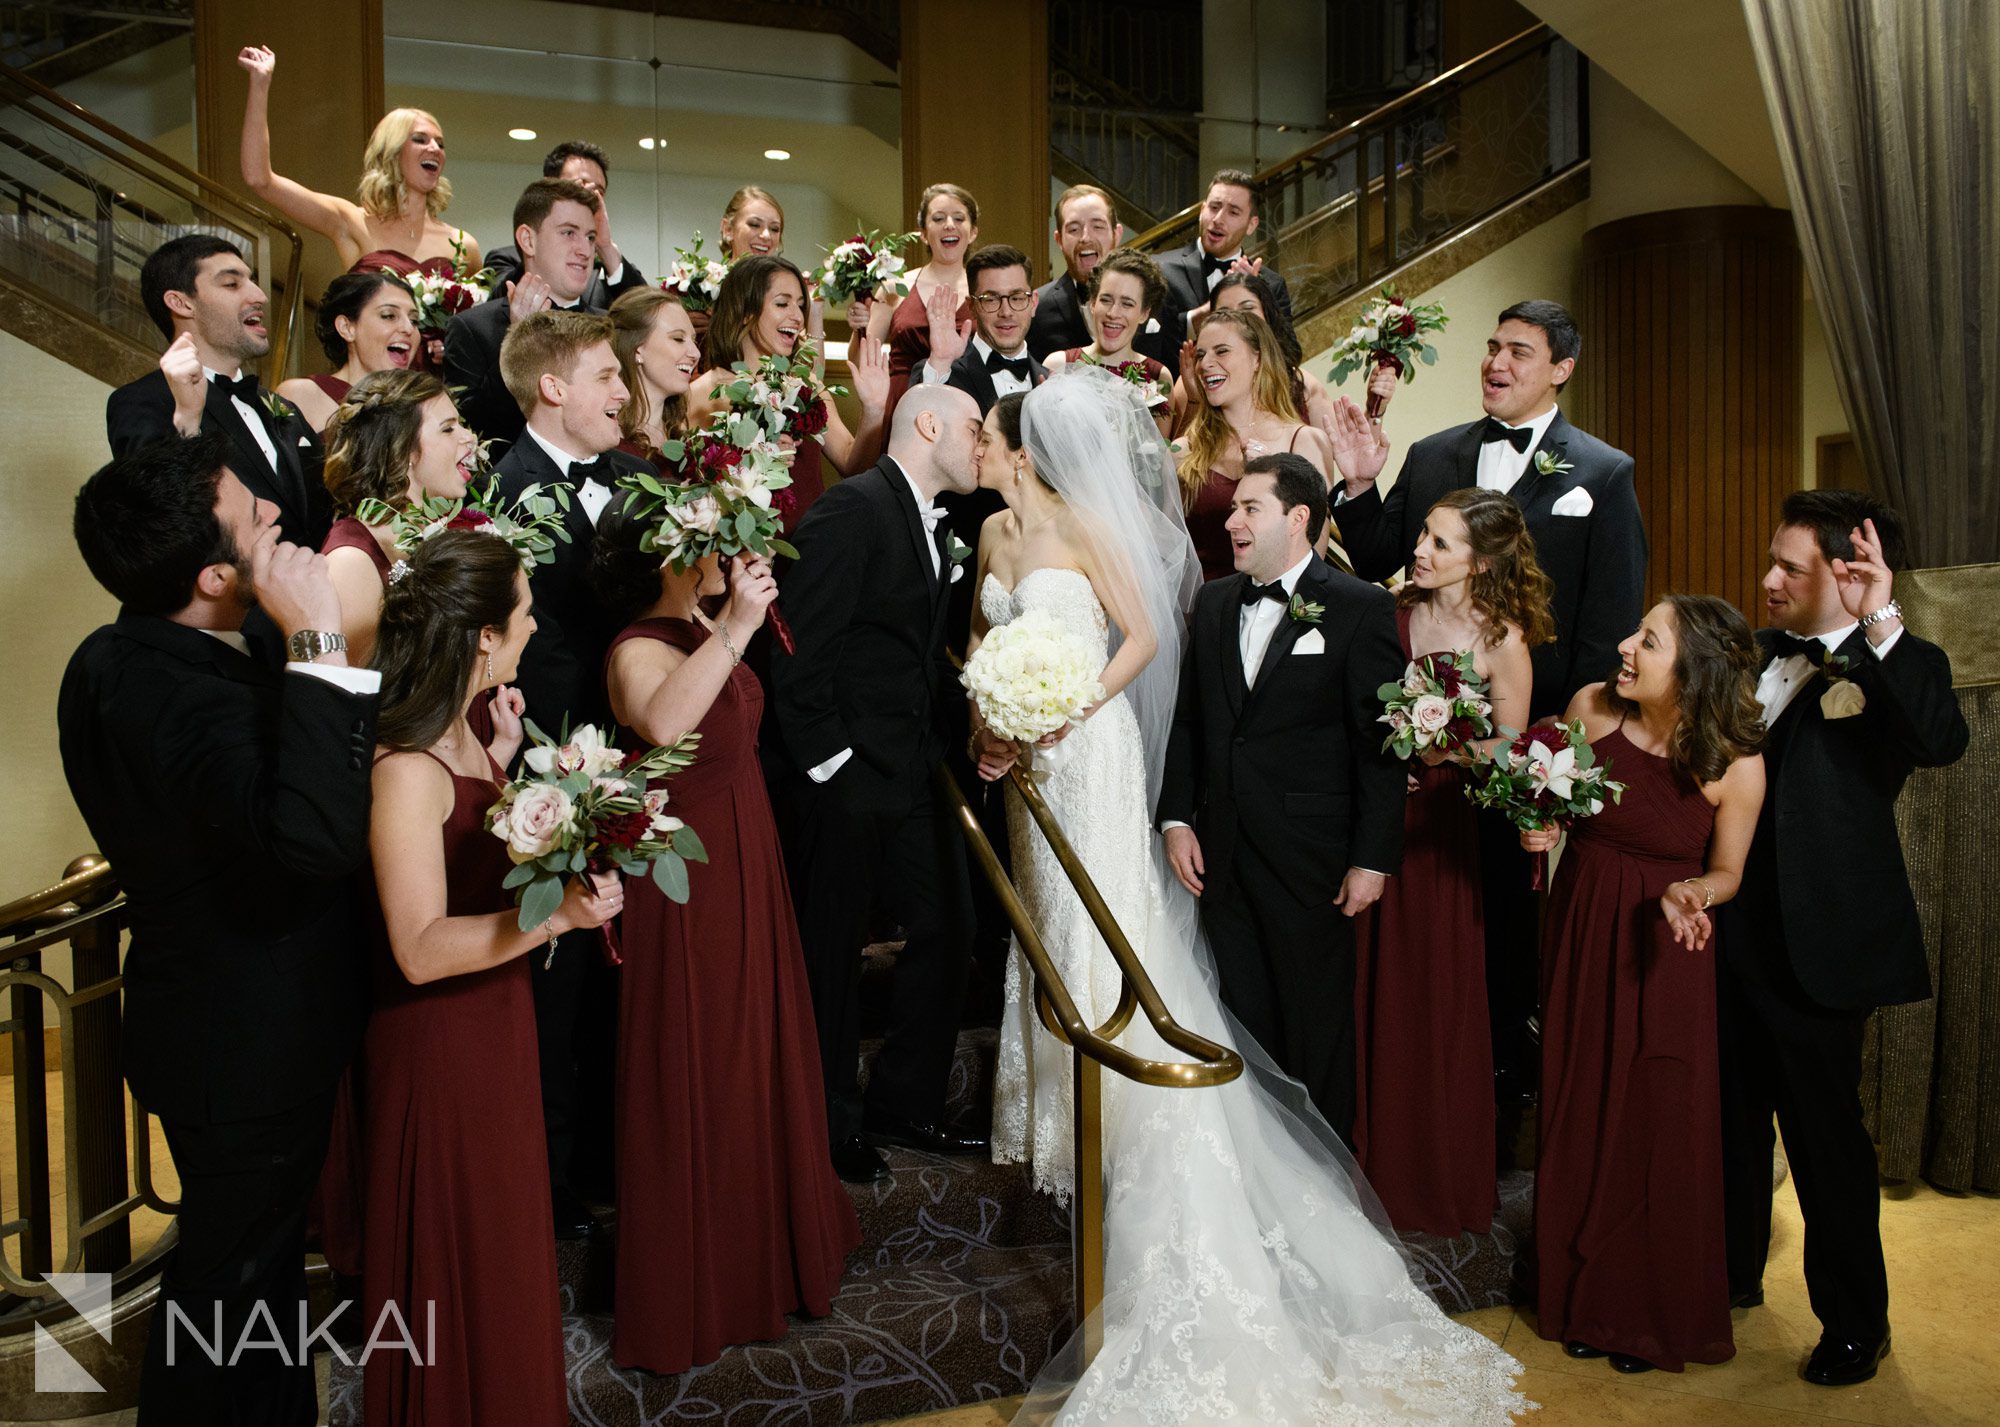 fairmont chicago wedding photos staircase bride groom